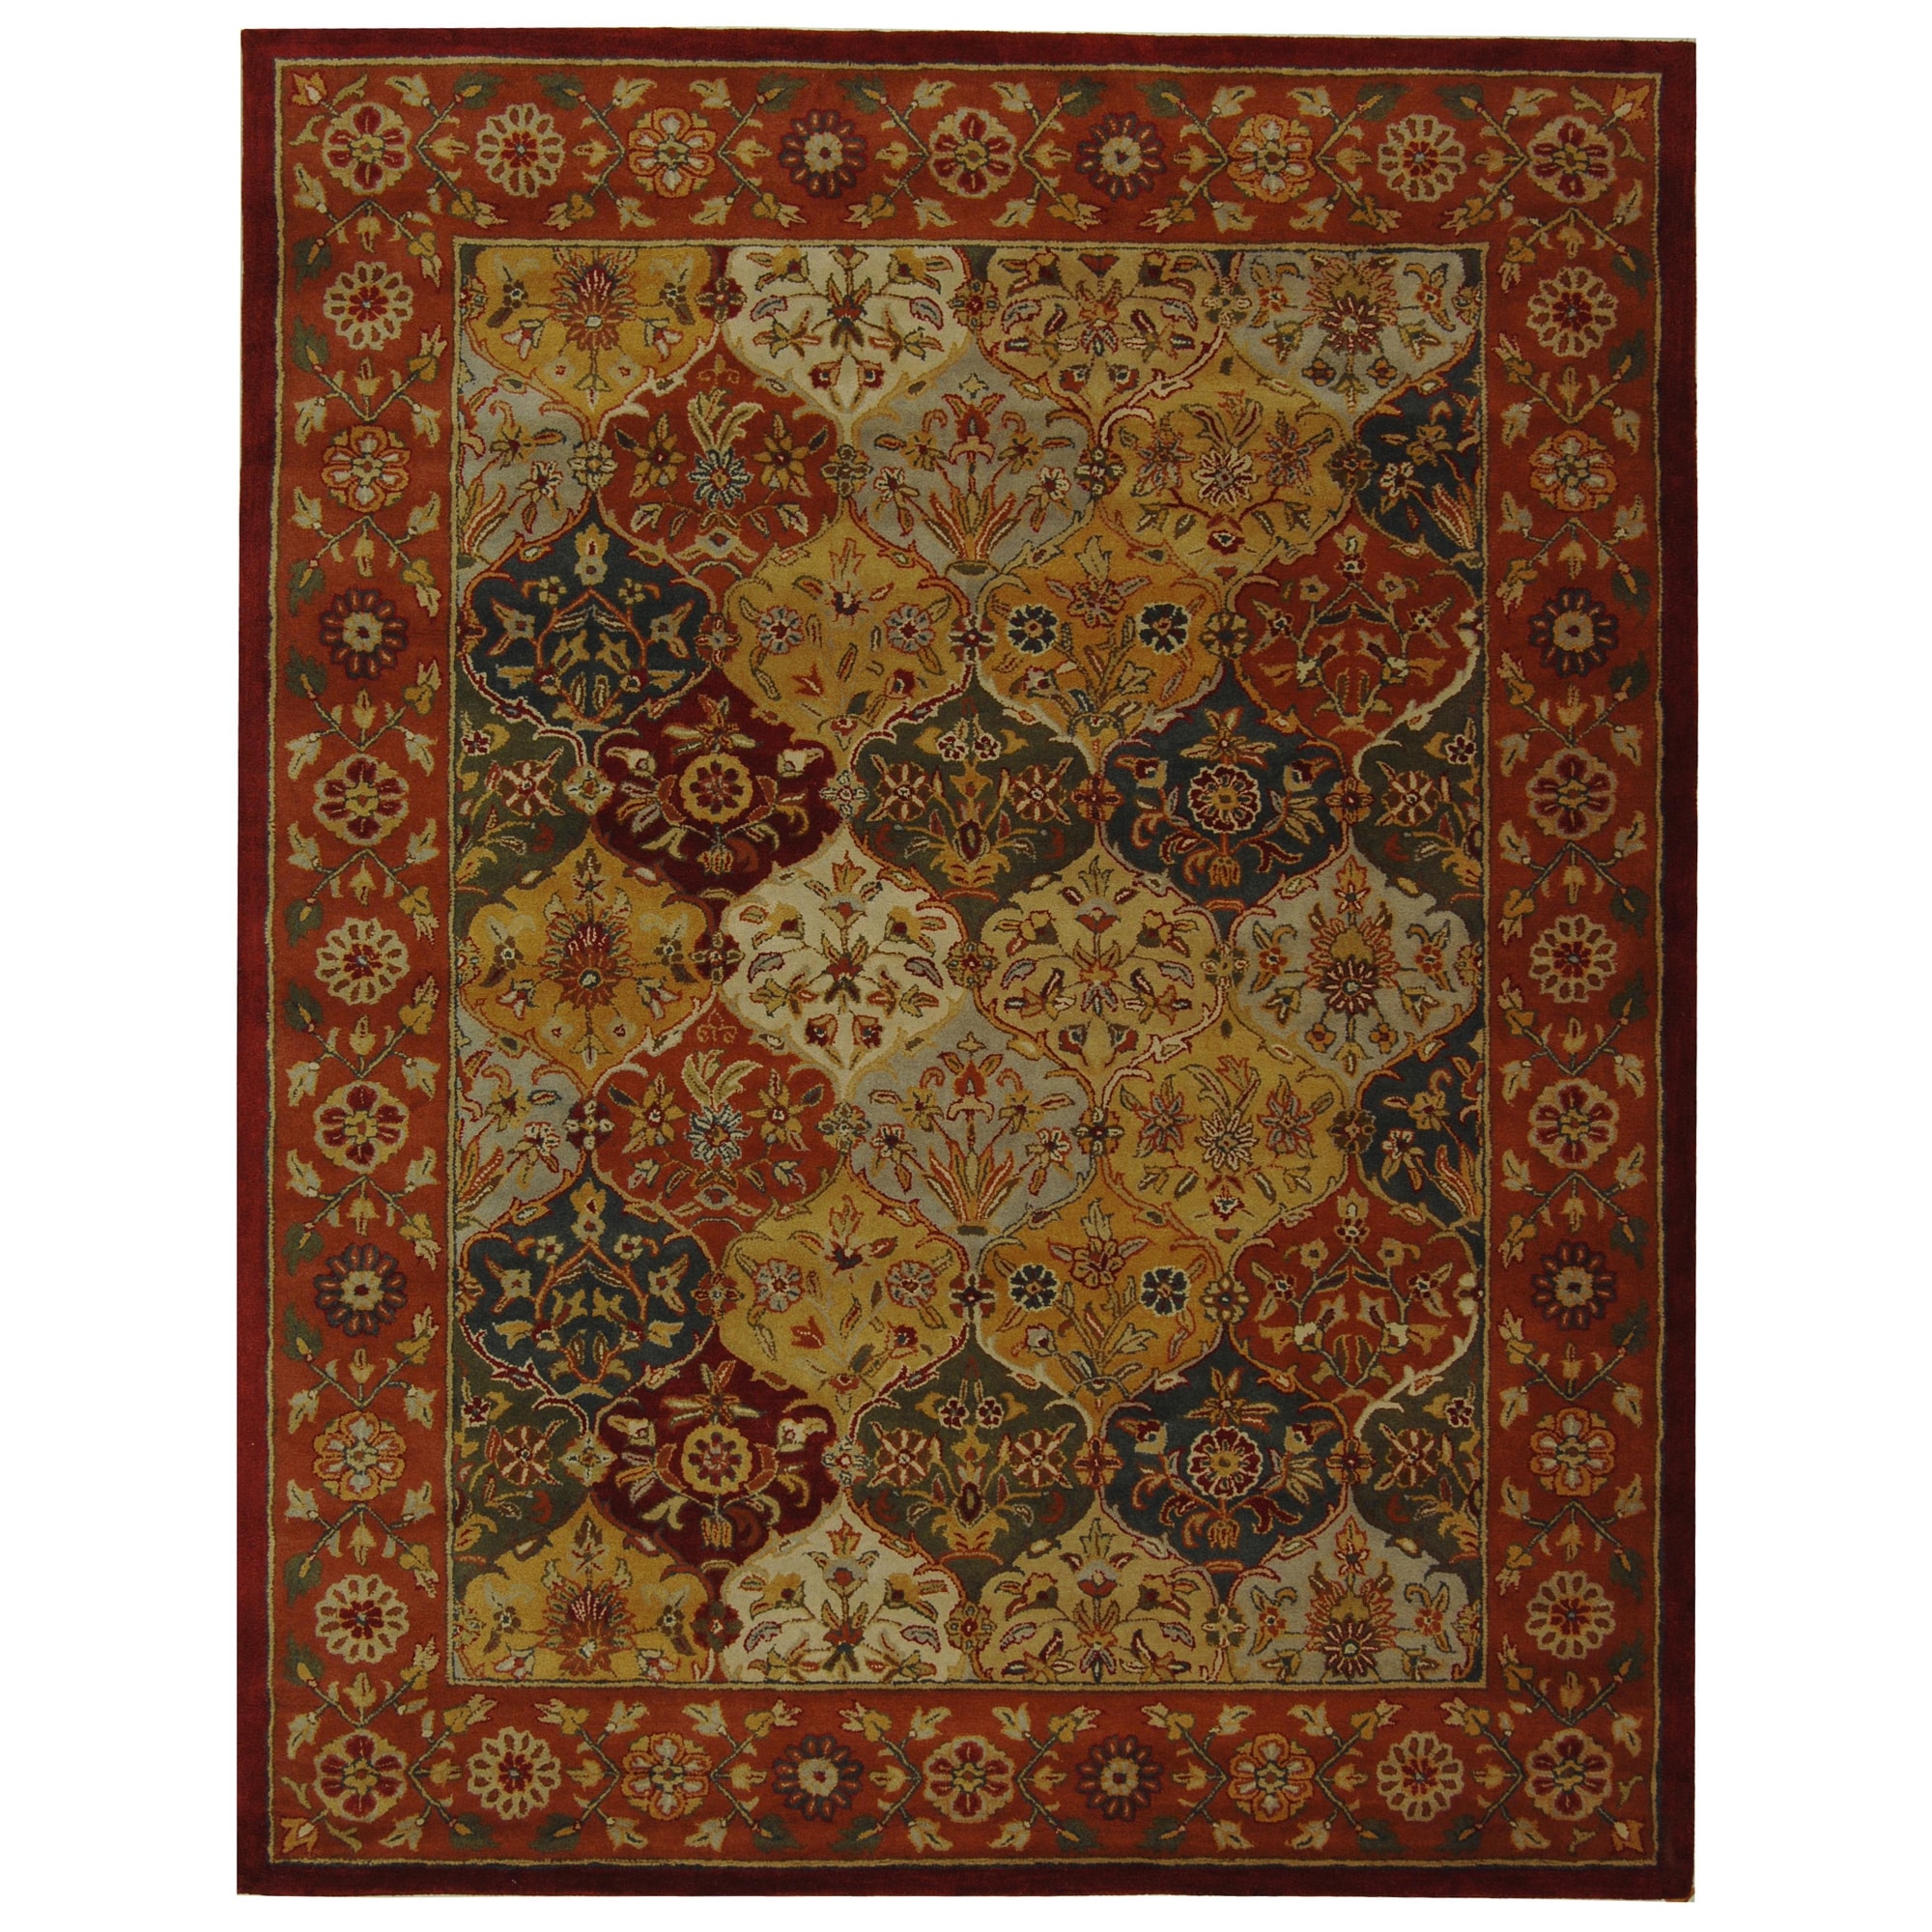 Handmade Heritage Bakhtiari Multicolored/red Wool Area Rug (5 X 8)